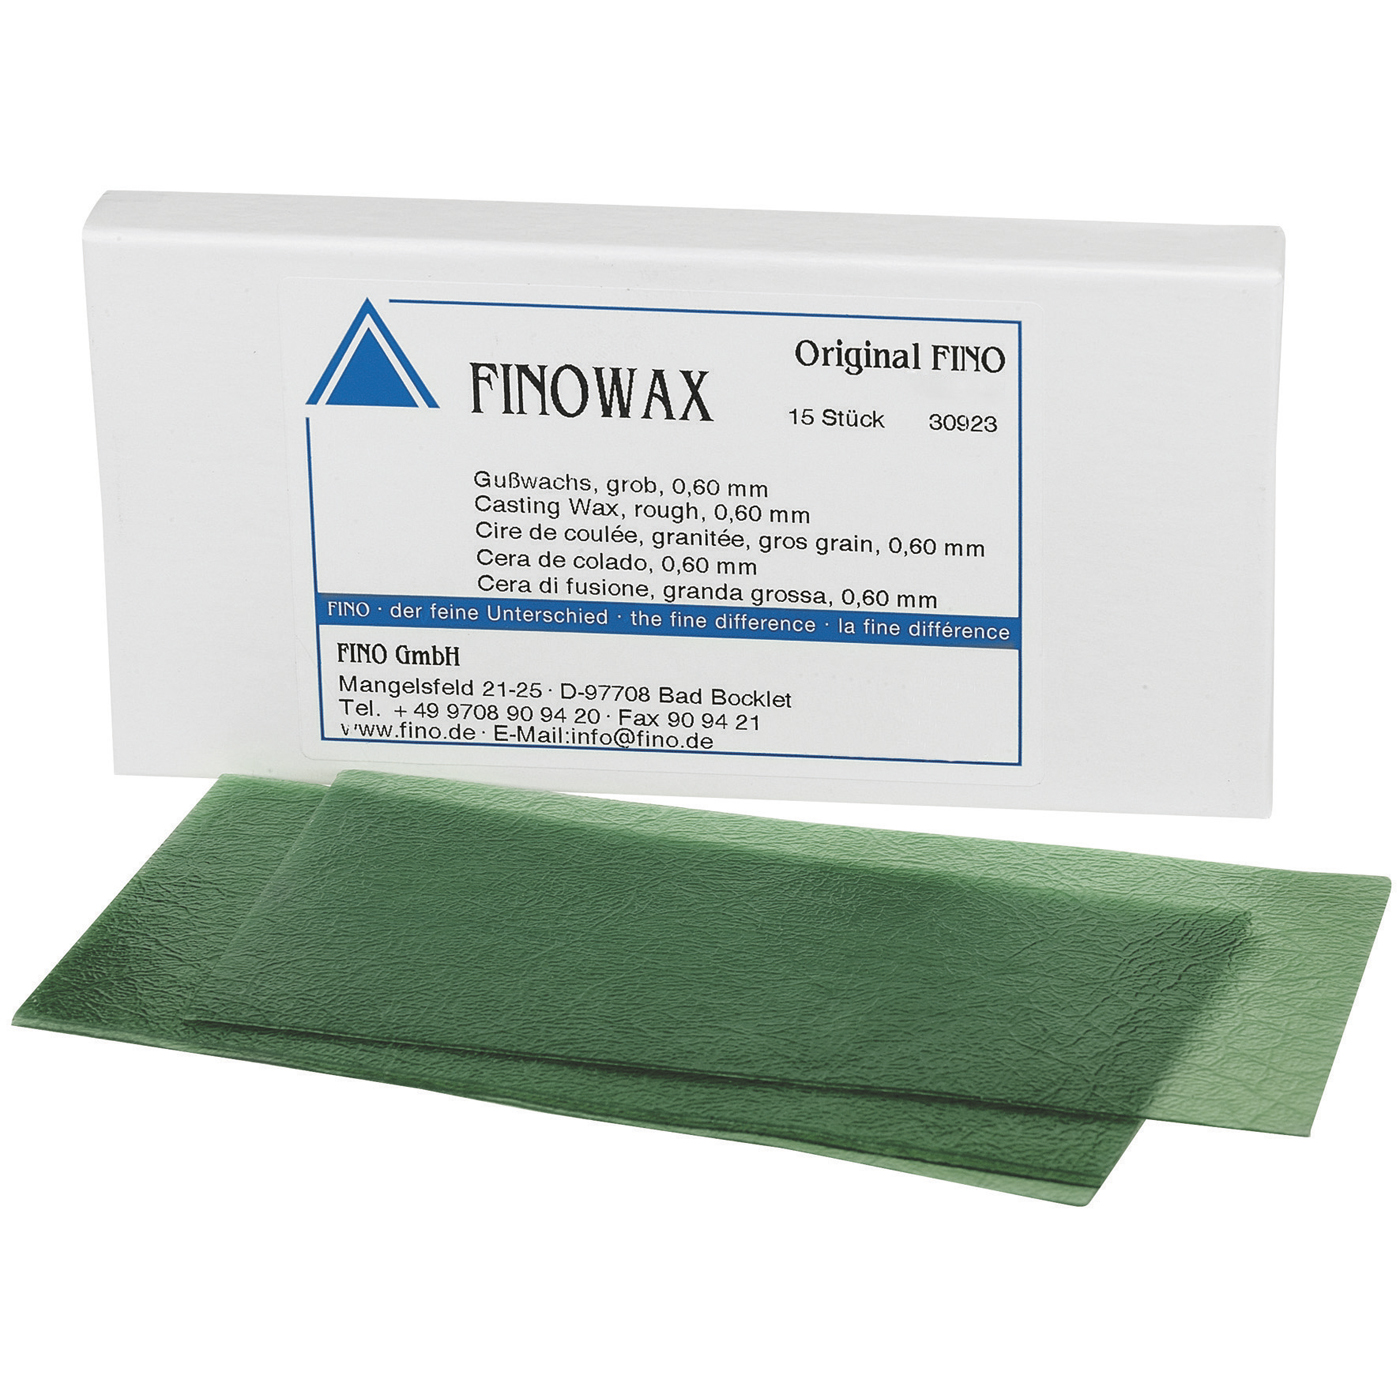 FINOWAX Casting Wax, Stippled, Coarse, 0.60 mm - 15 pieces